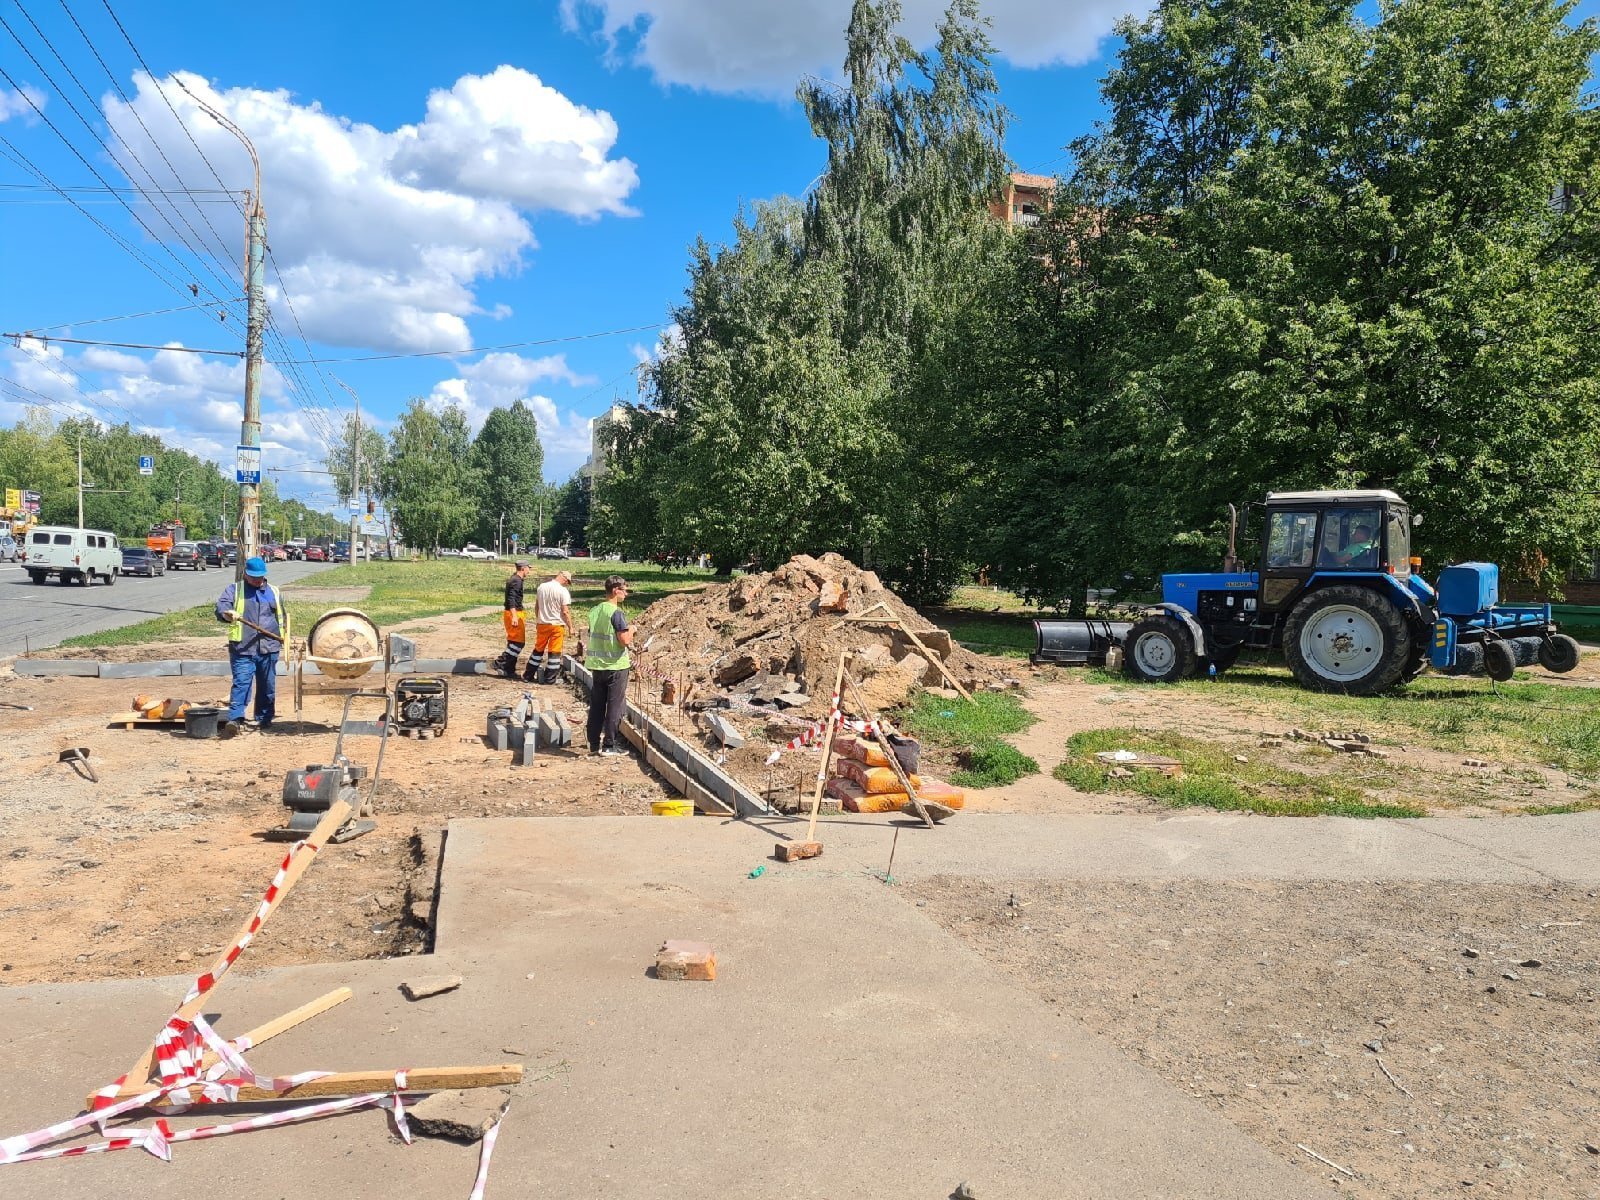 

Новую остановку начали устанавливать на улице Ударной в Ижевске

